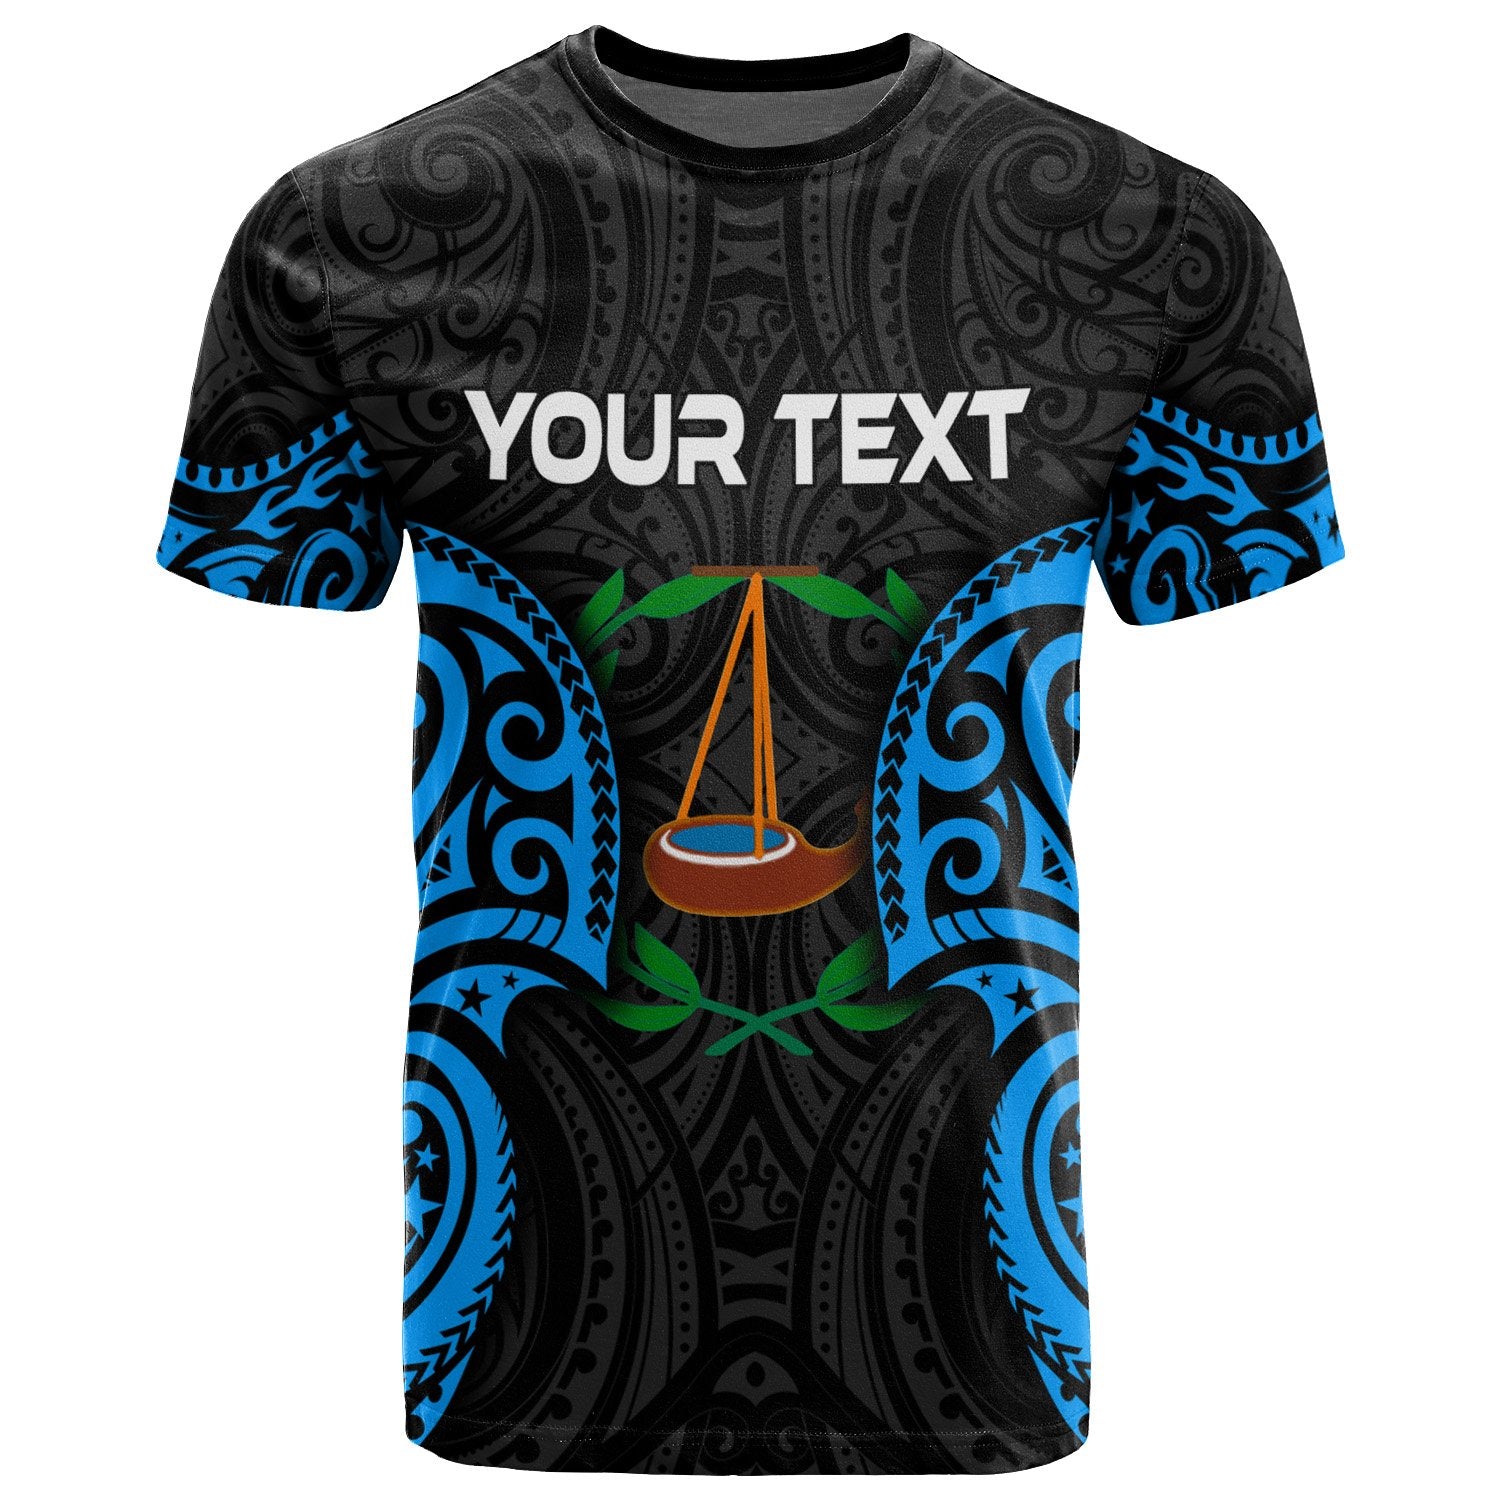 Palau Ngatpang Polynesian Custom T Shirt Palau Spirit Unisex Black - Polynesian Pride